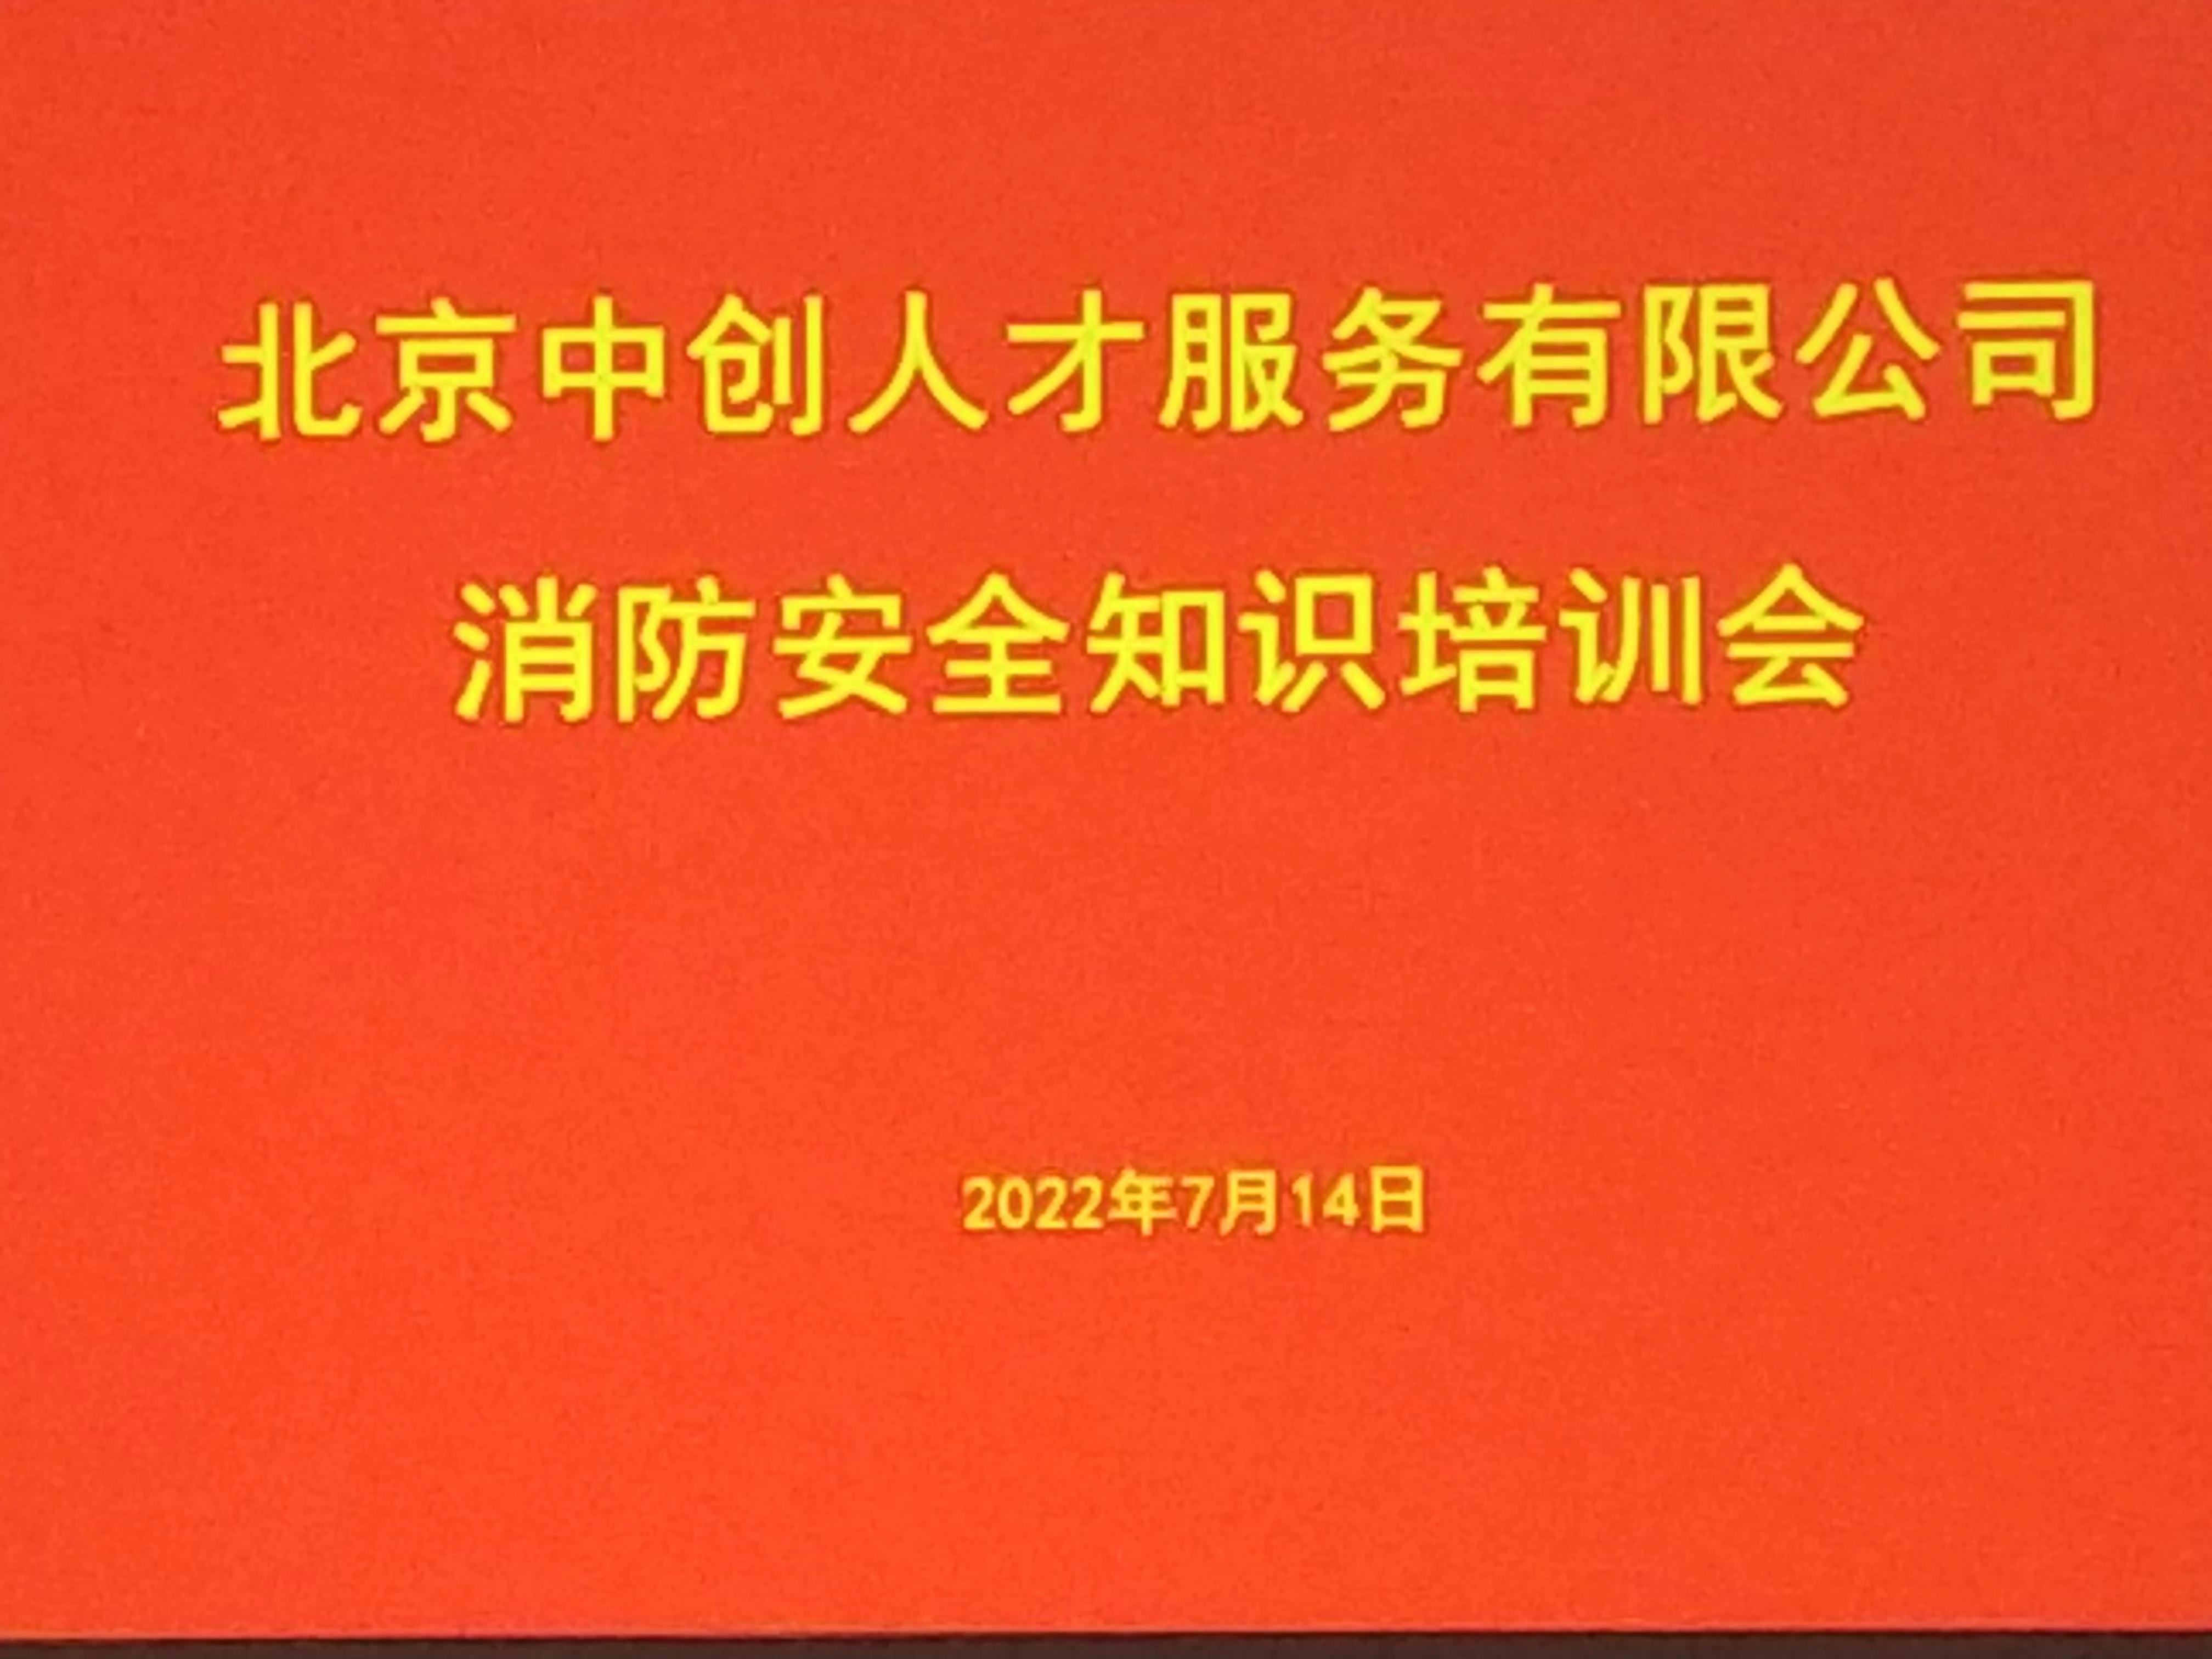 北京中创人才服务有限公司消防安全知识培训会